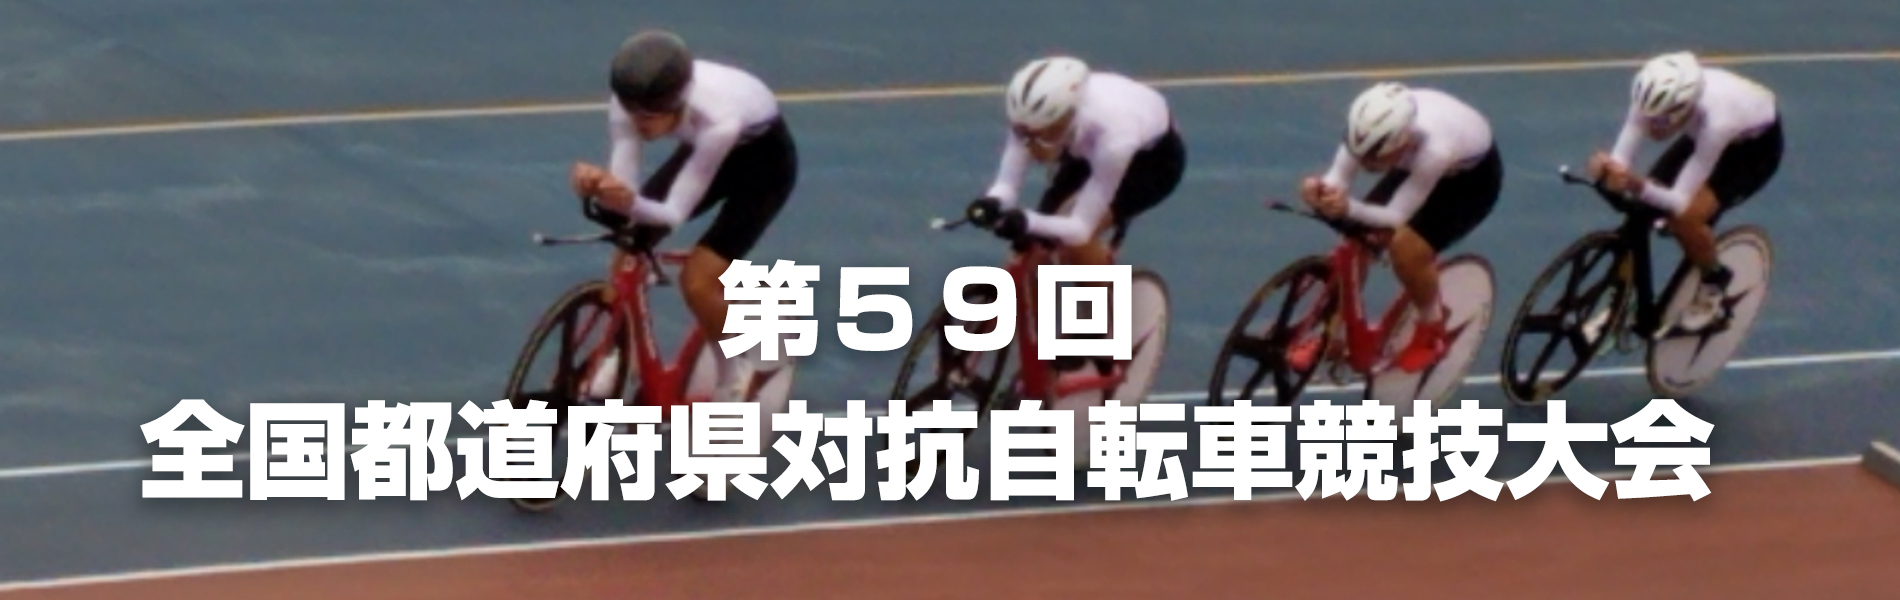 第59回全国都道府県対抗自転車競技大会